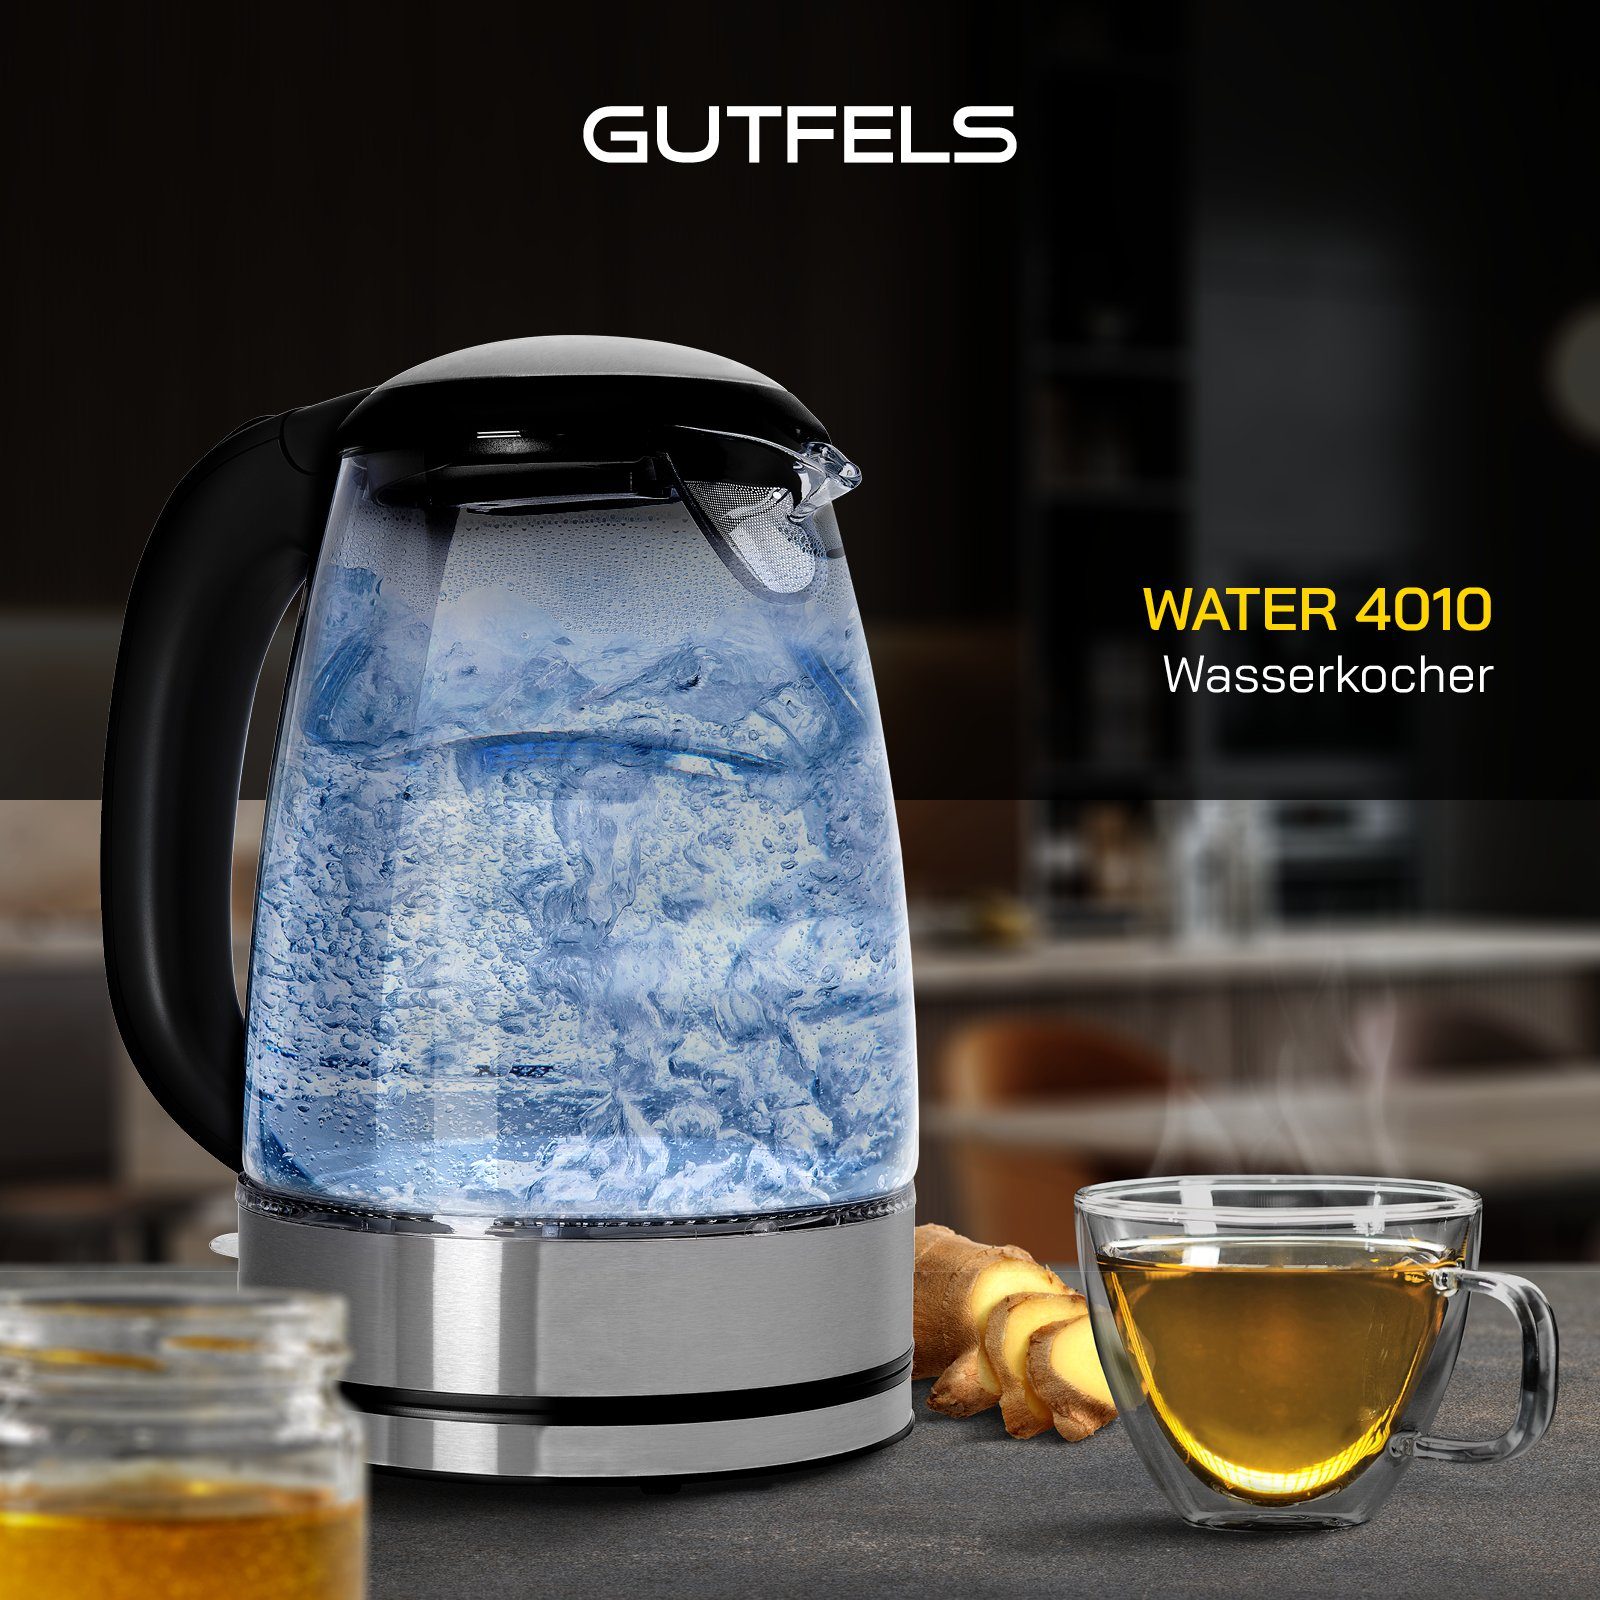 XL-Kocher Wasserkocher Gutfels l, 2200 W, 4010, mit blauer Ambientebeleuchtung 1.7 WATER